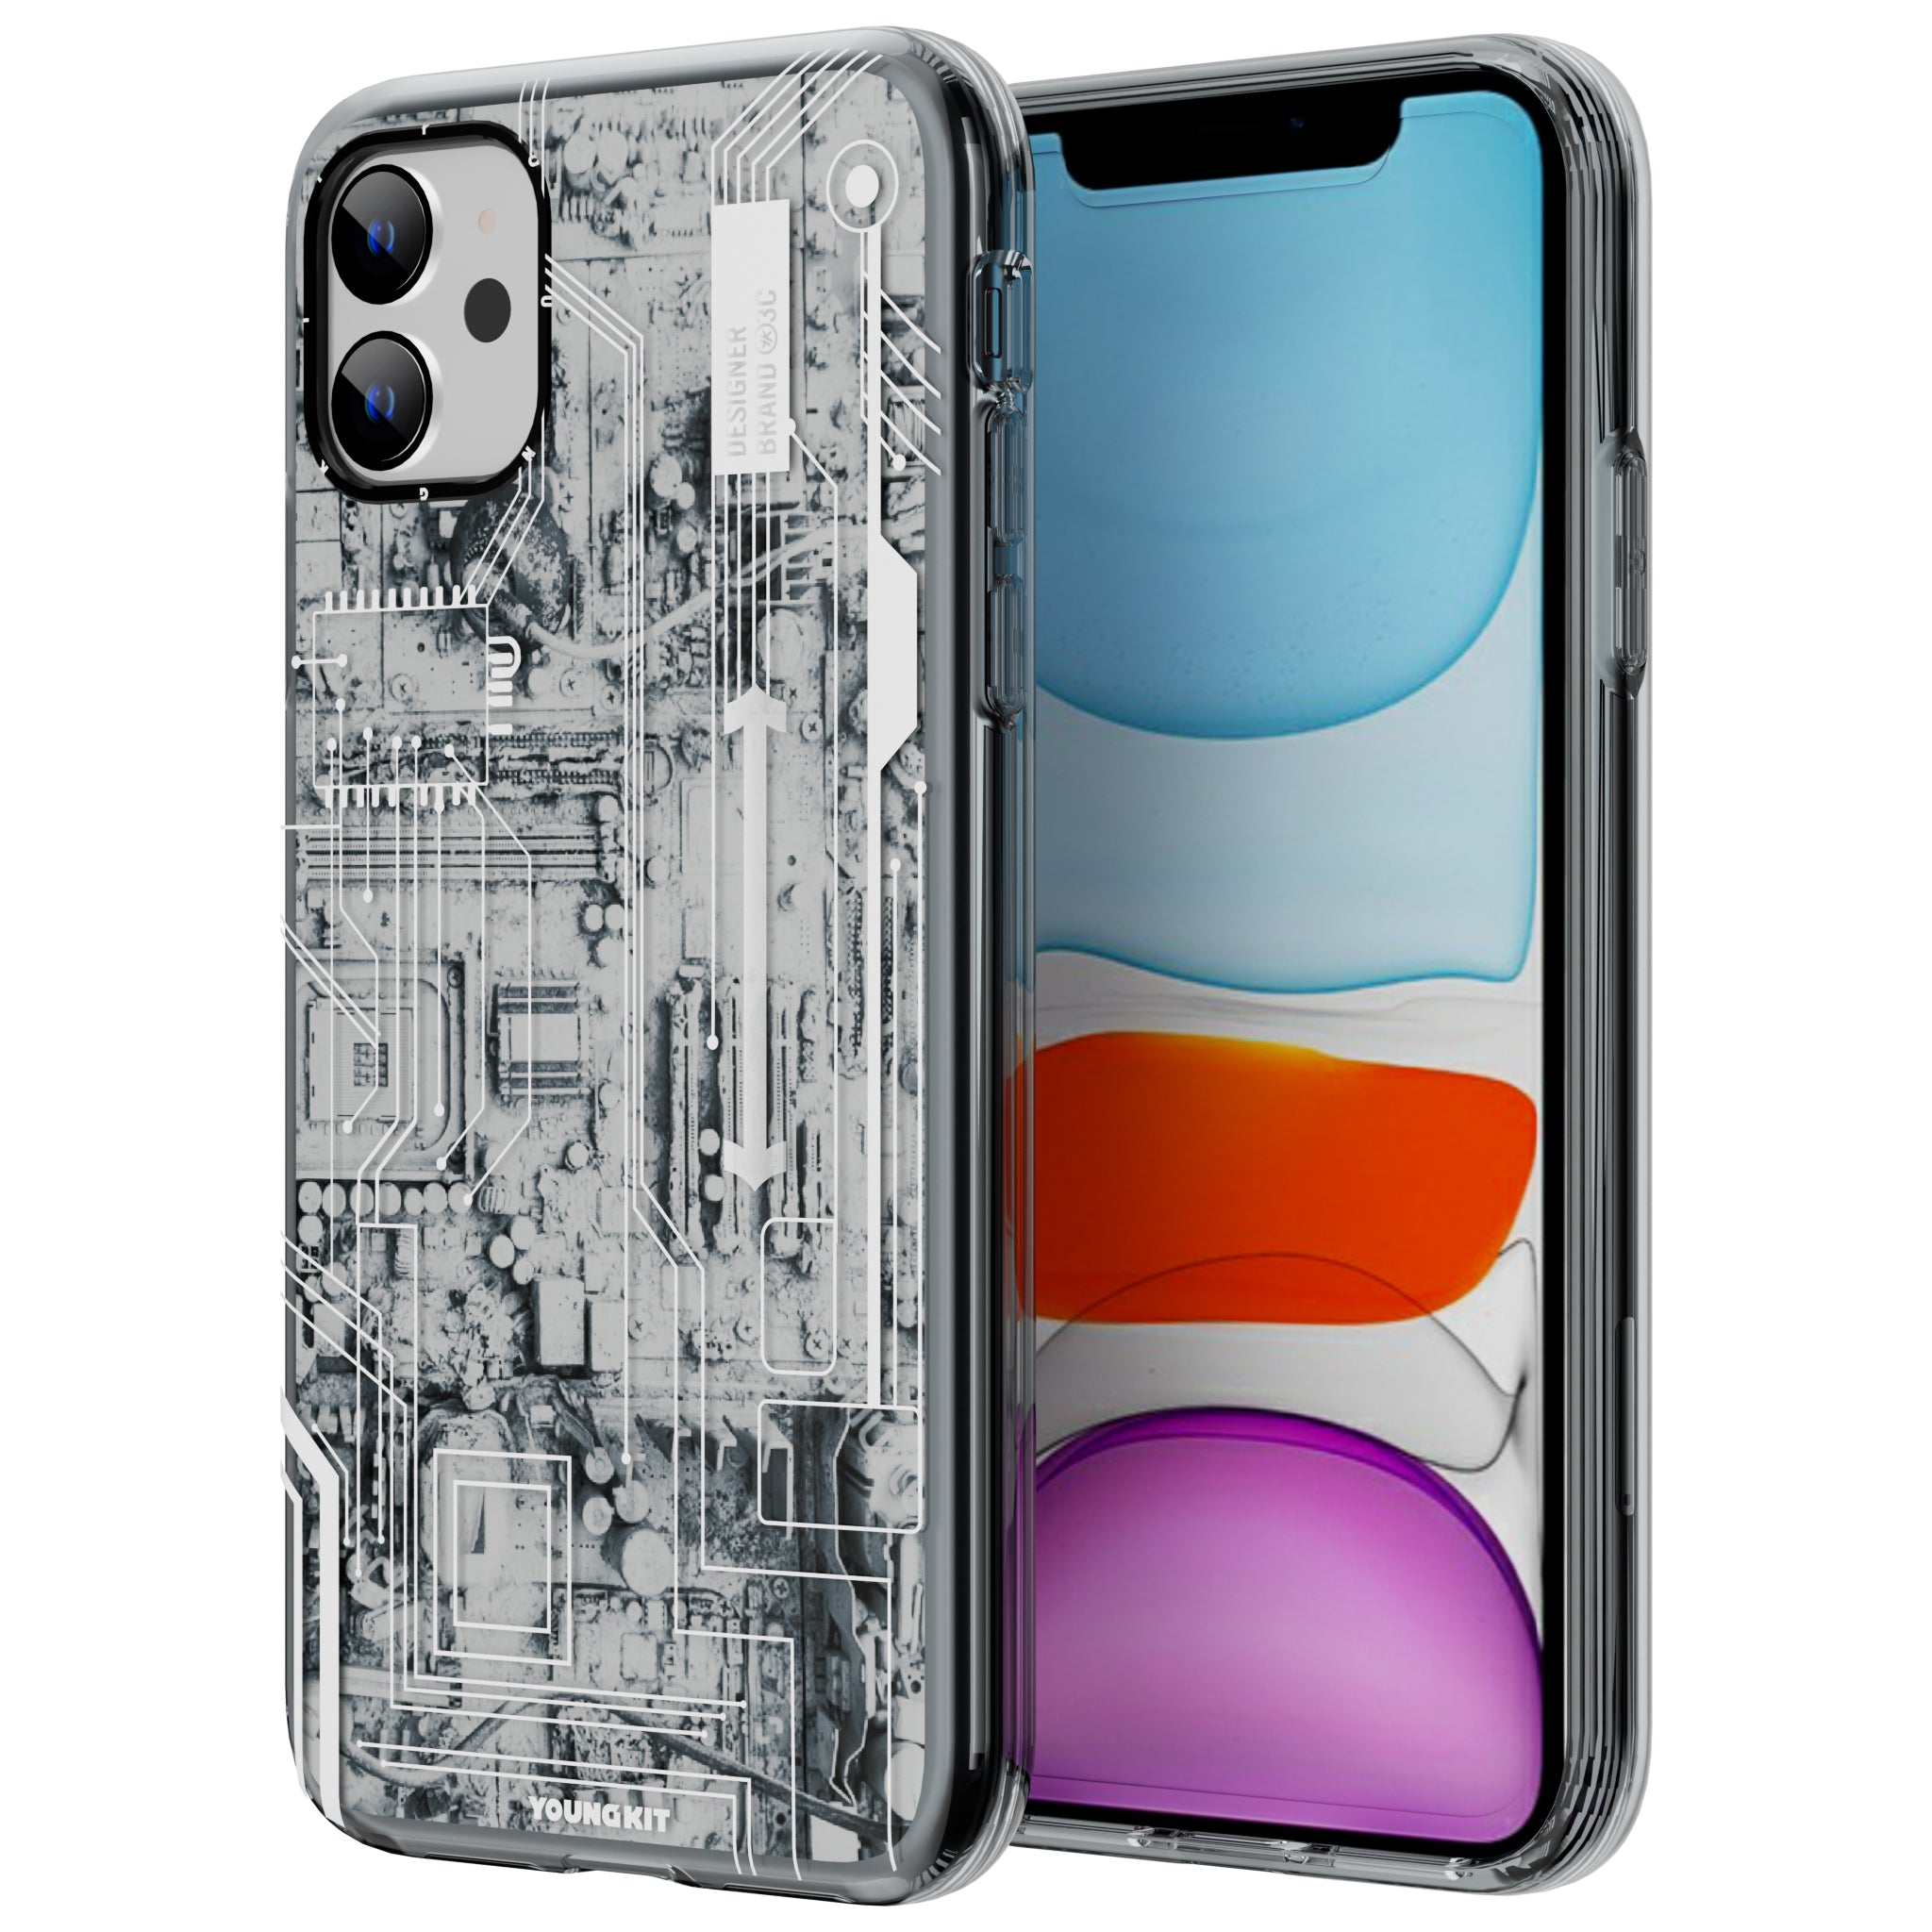 Futuristic Circuit iPhone11 Case